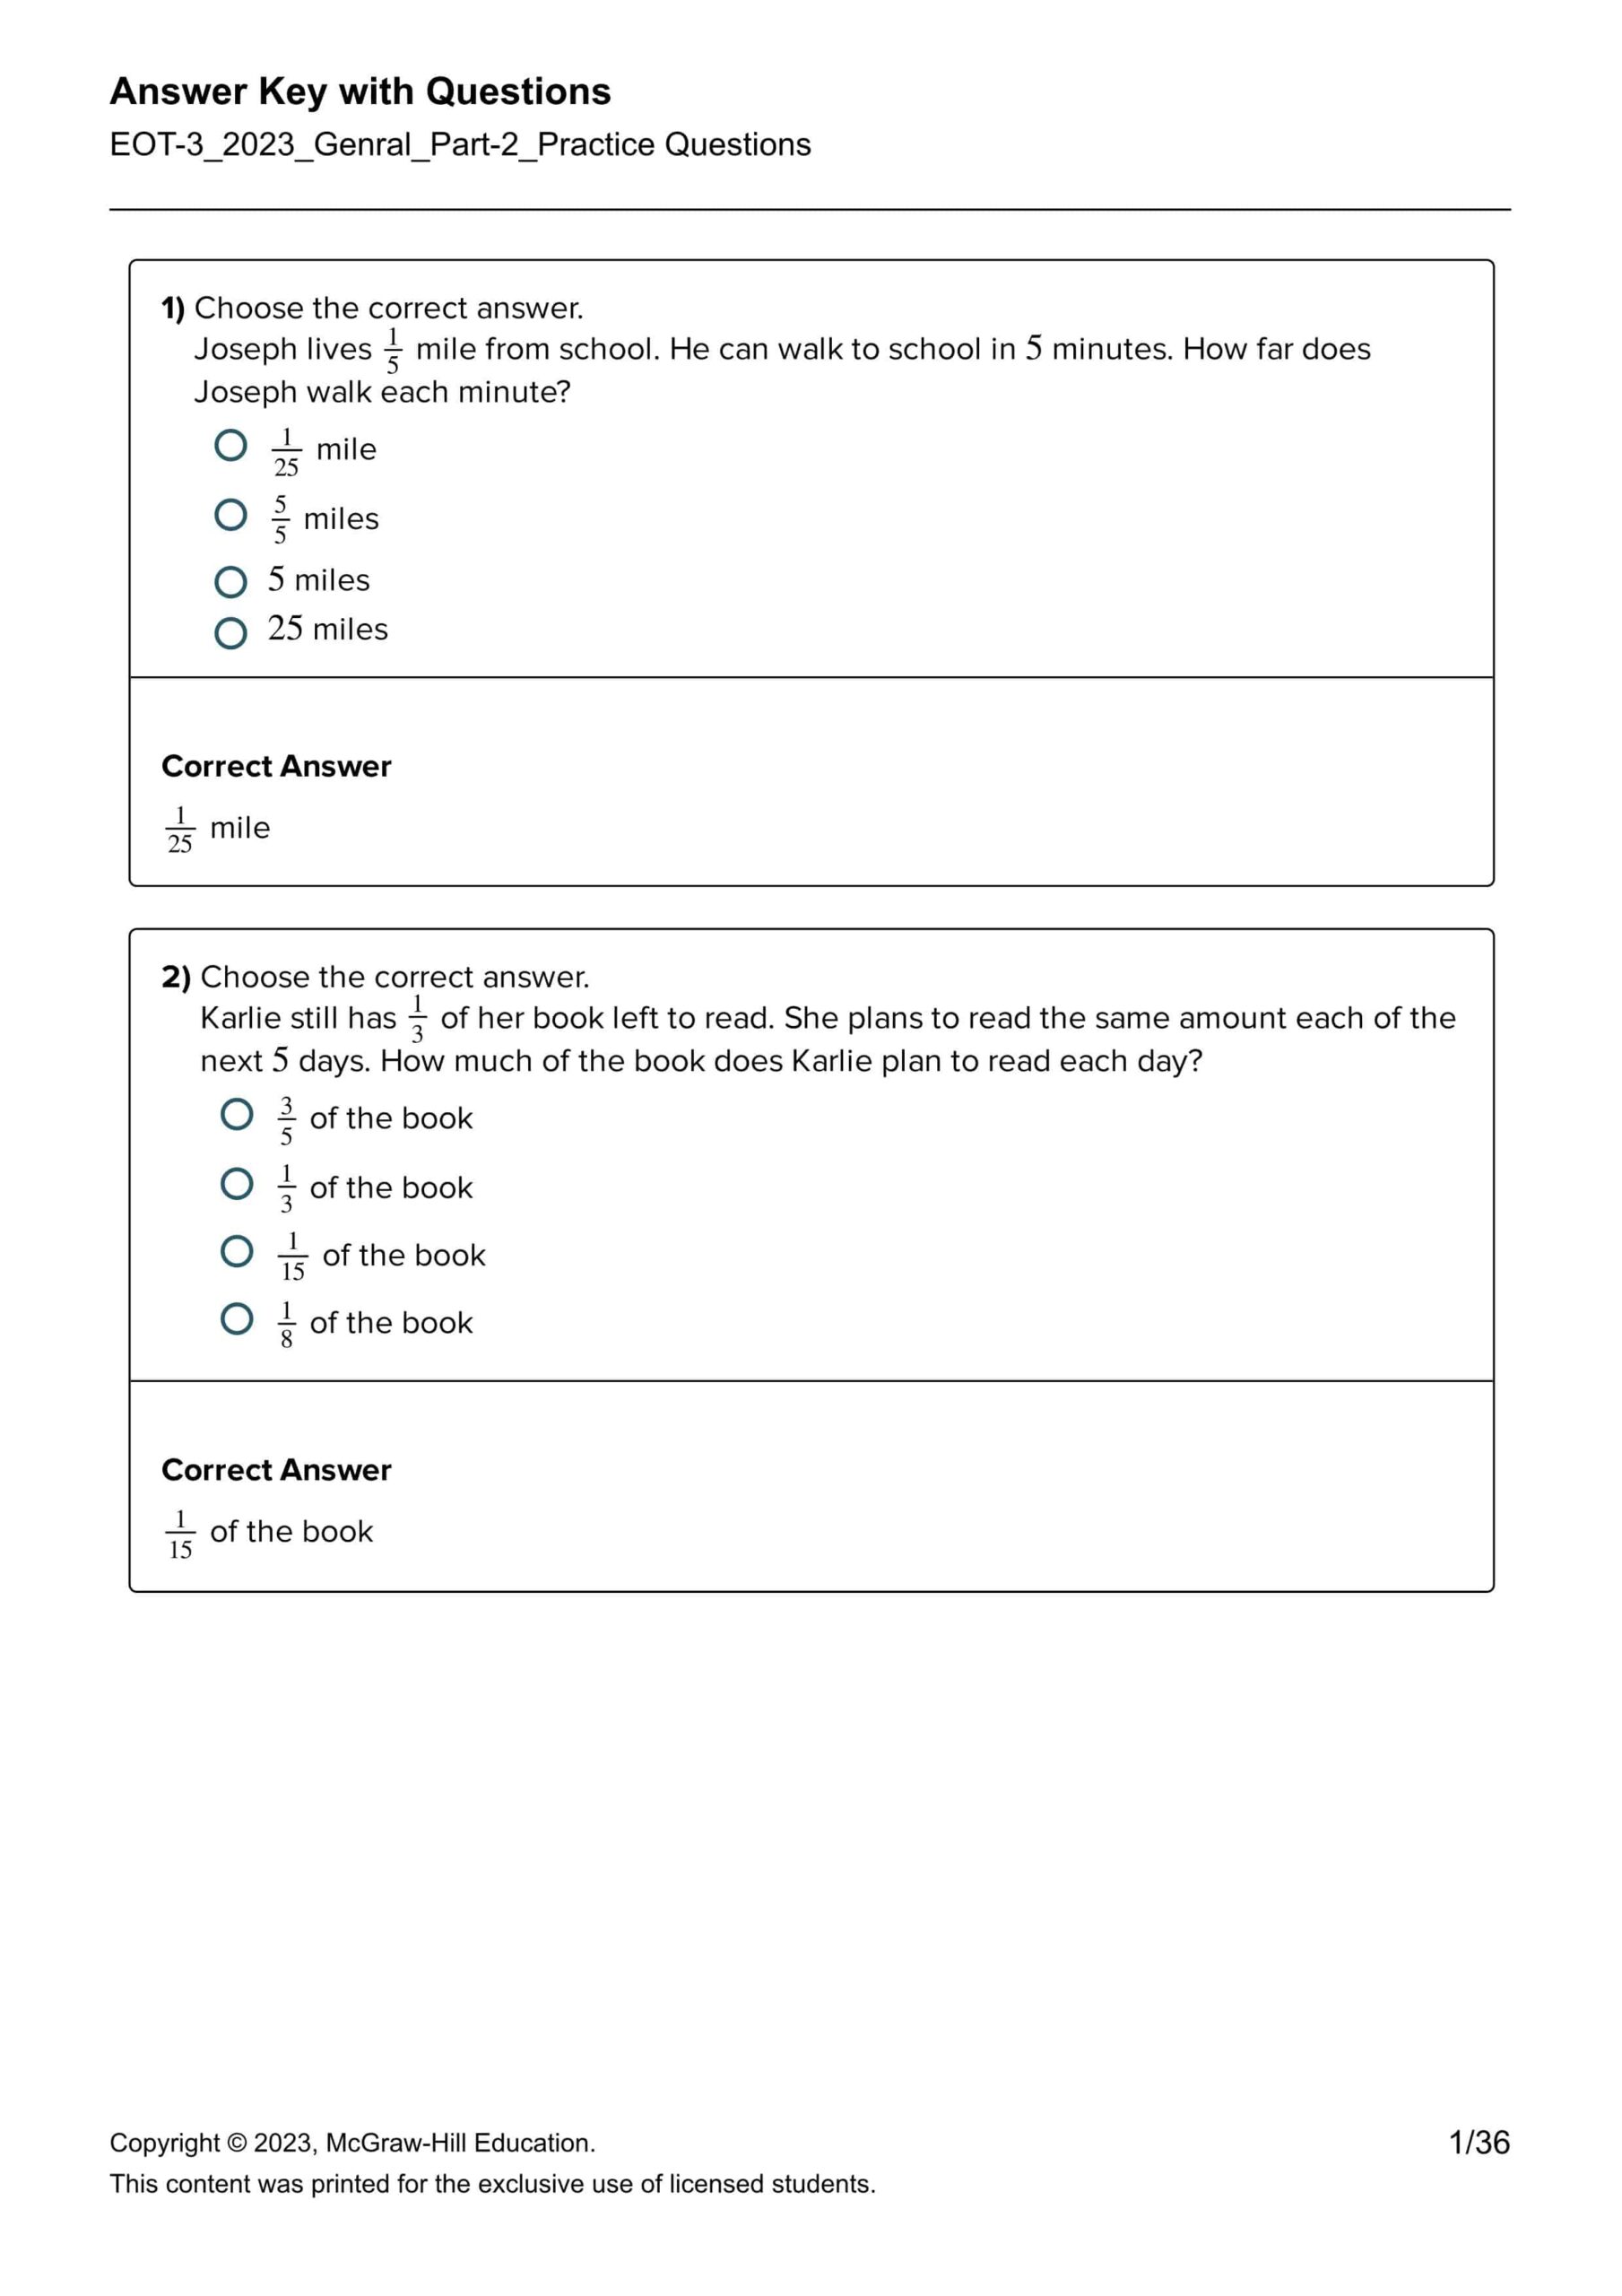 حل أسئلة Practice Questions الرياضيات المتكاملة الصف الخامس Reveal 